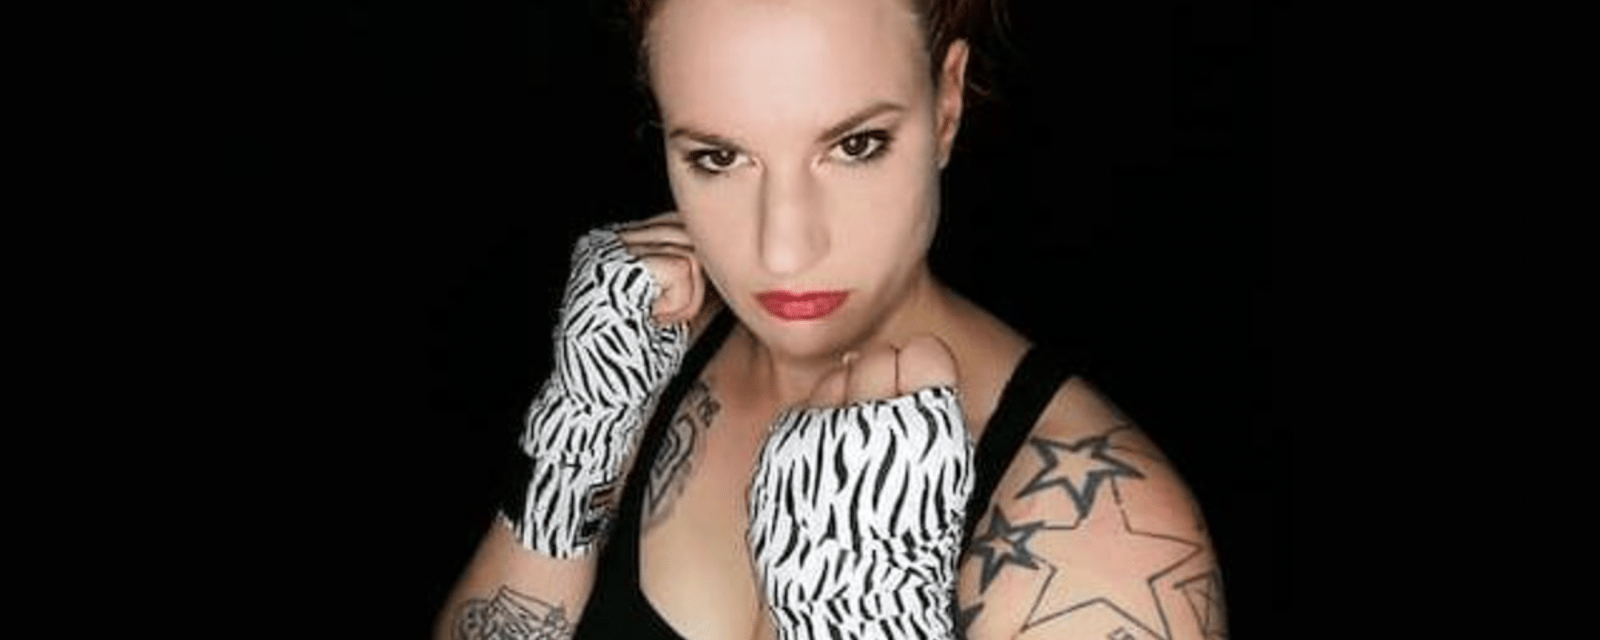 Une Québécoise annule son combat contre une boxeuse trans pour des raisons de sécurité